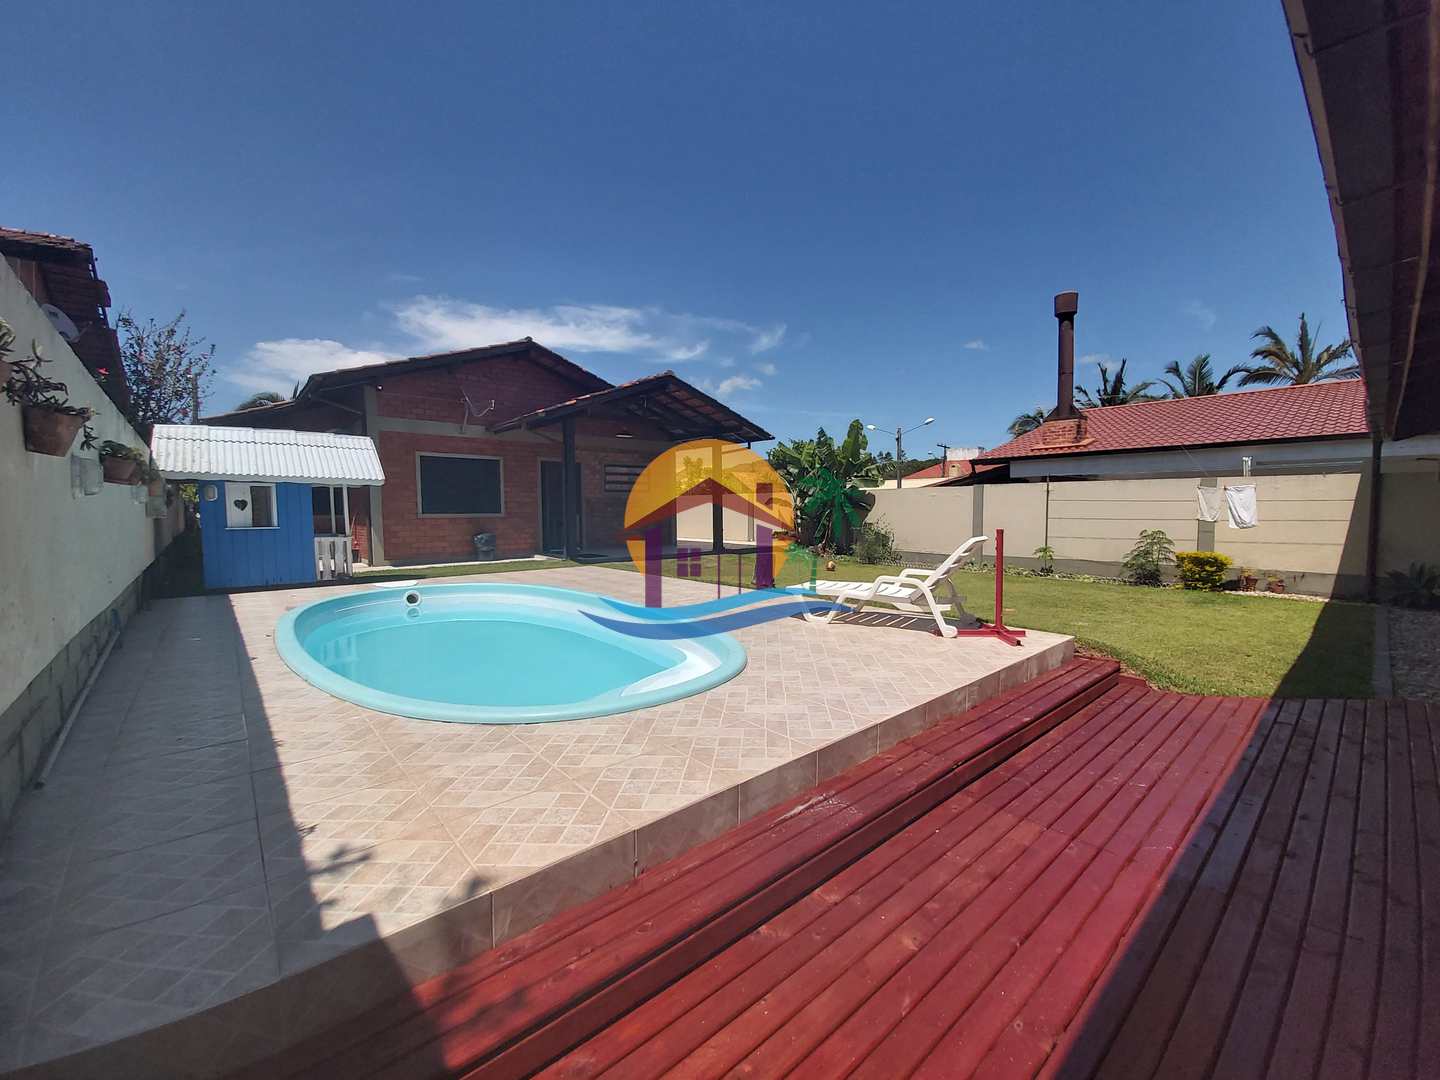 Casa Impecável, com 3 Dormitórios e Deck com Piscina, localizado no Ingleses /Florianópolis